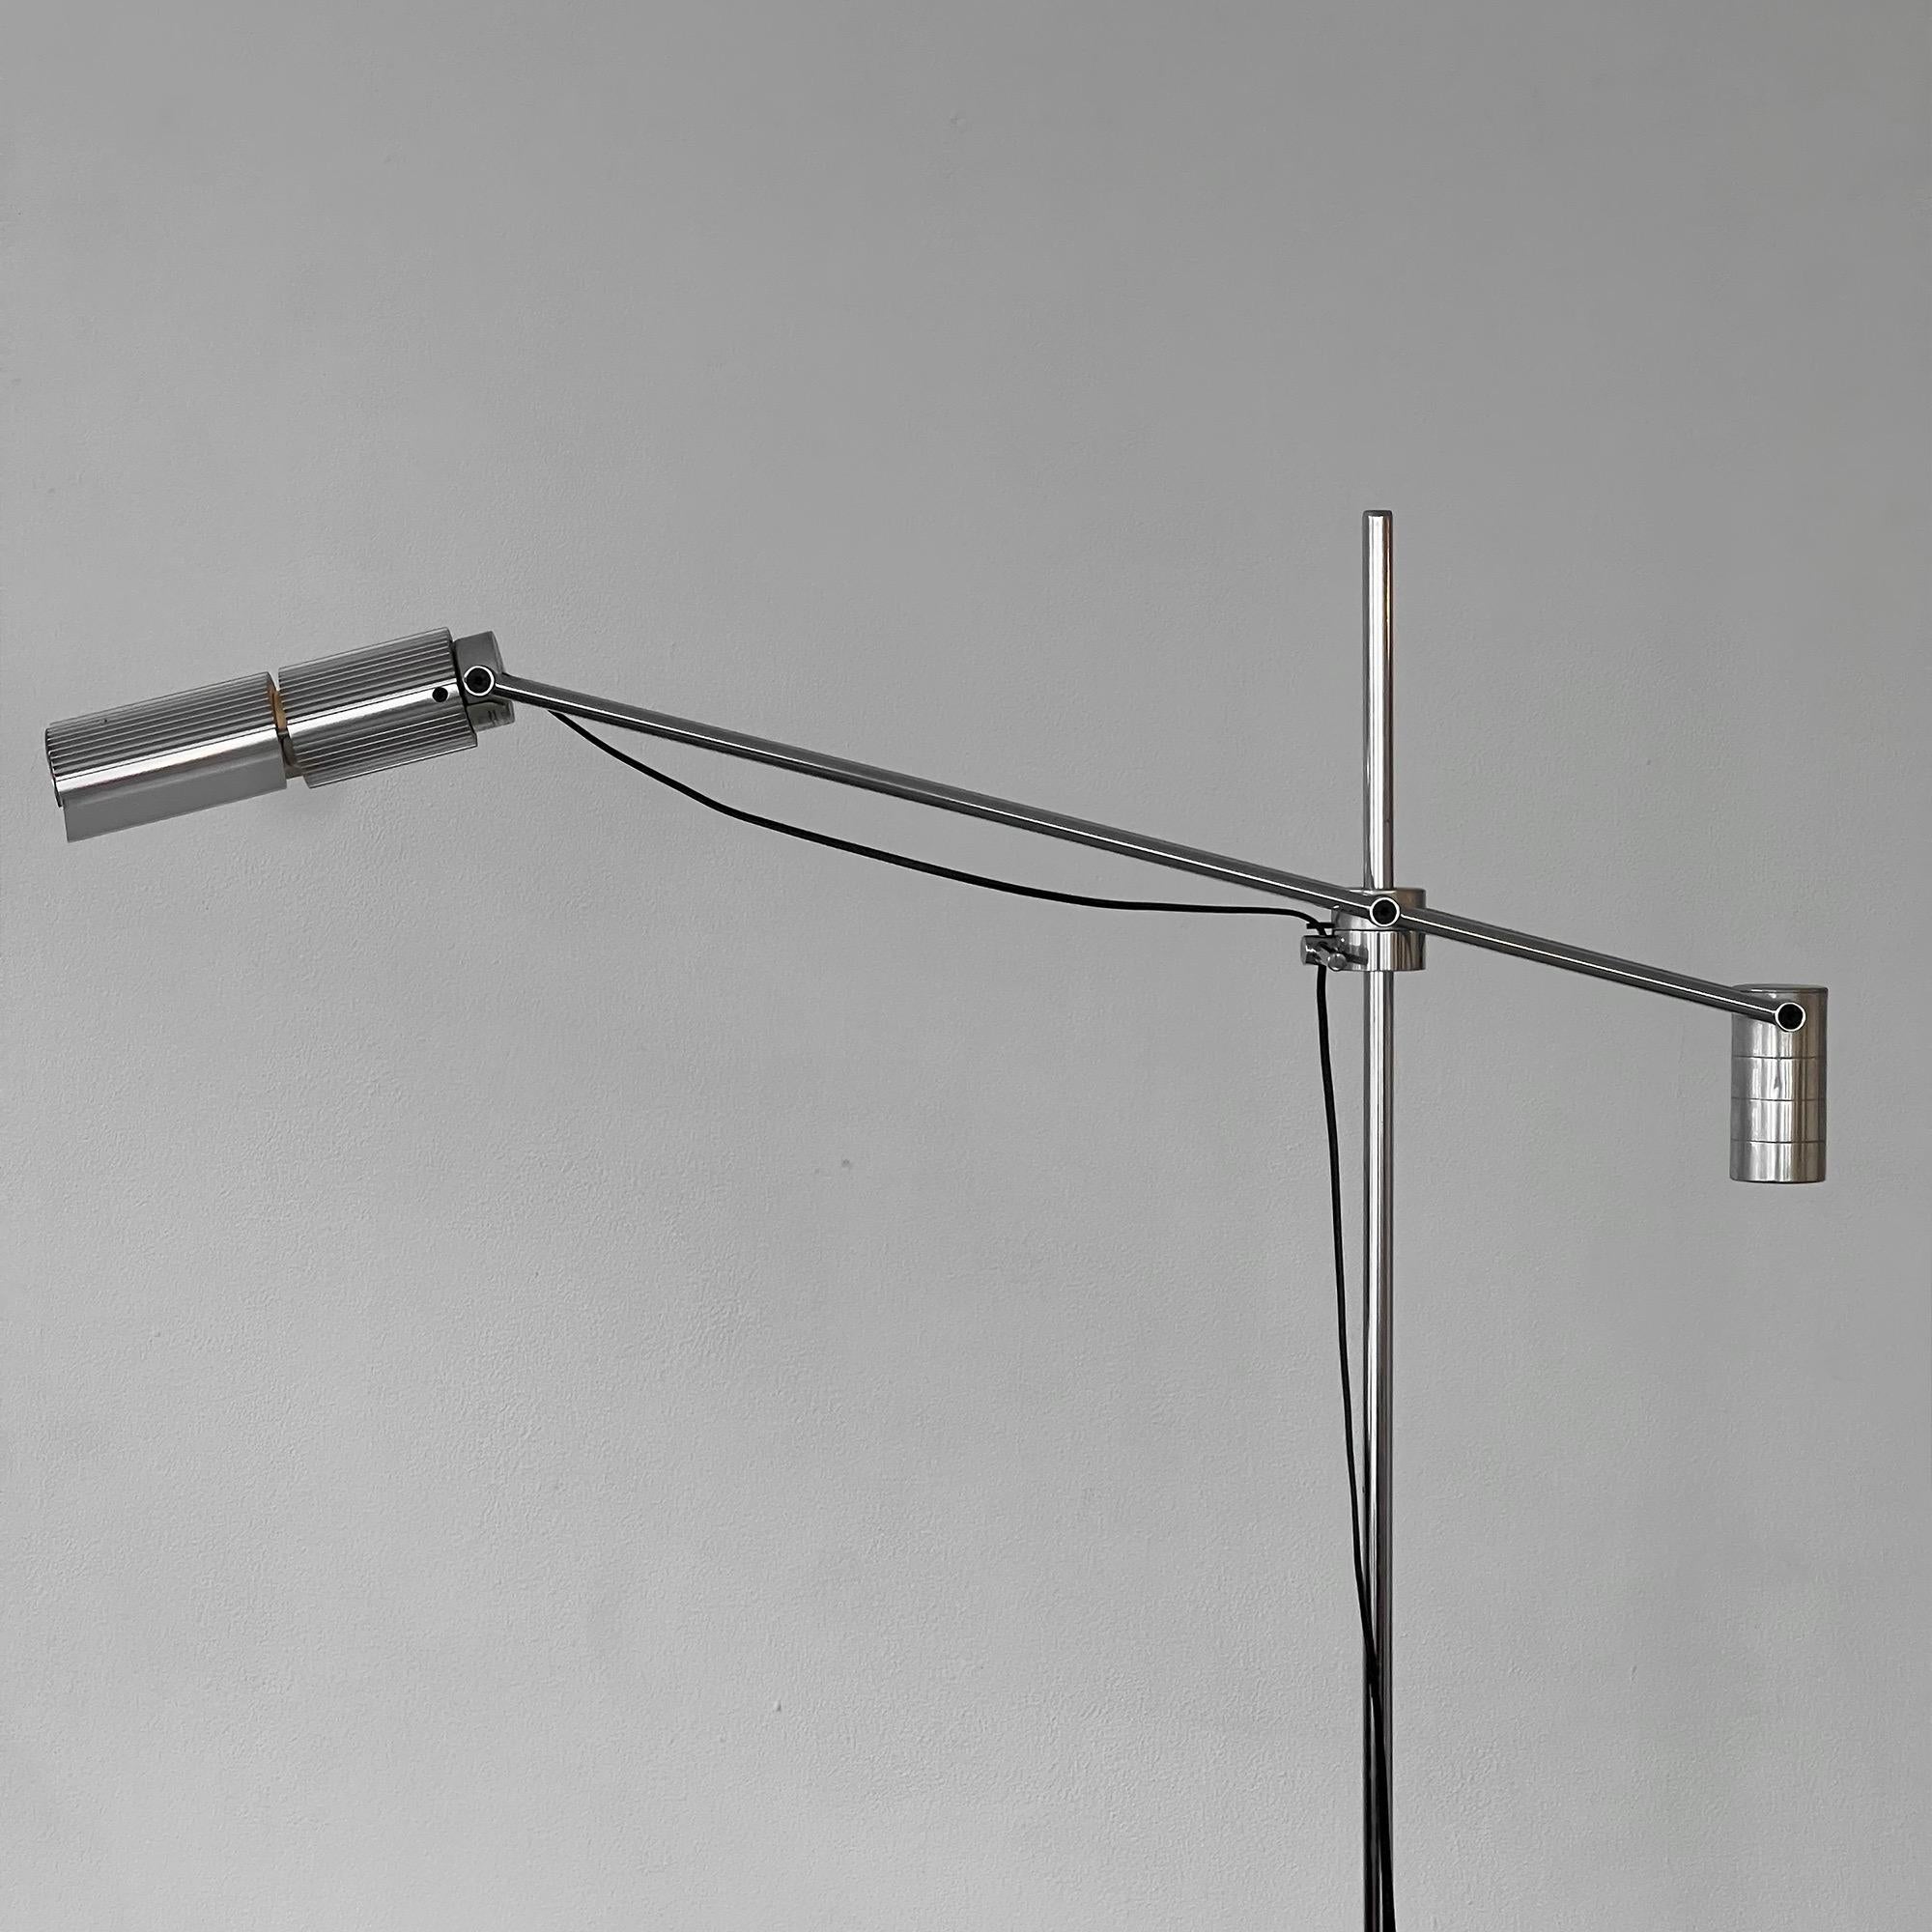 Ce lampadaire a été conçu par l'architecte Viktor Frauenknecht pour Swiss Lamps International. Fondée en 1967, l'entreprise est spécialisée dans la conception et la fabrication de luminaires haut de gamme. L'utilisation de matériaux de qualité